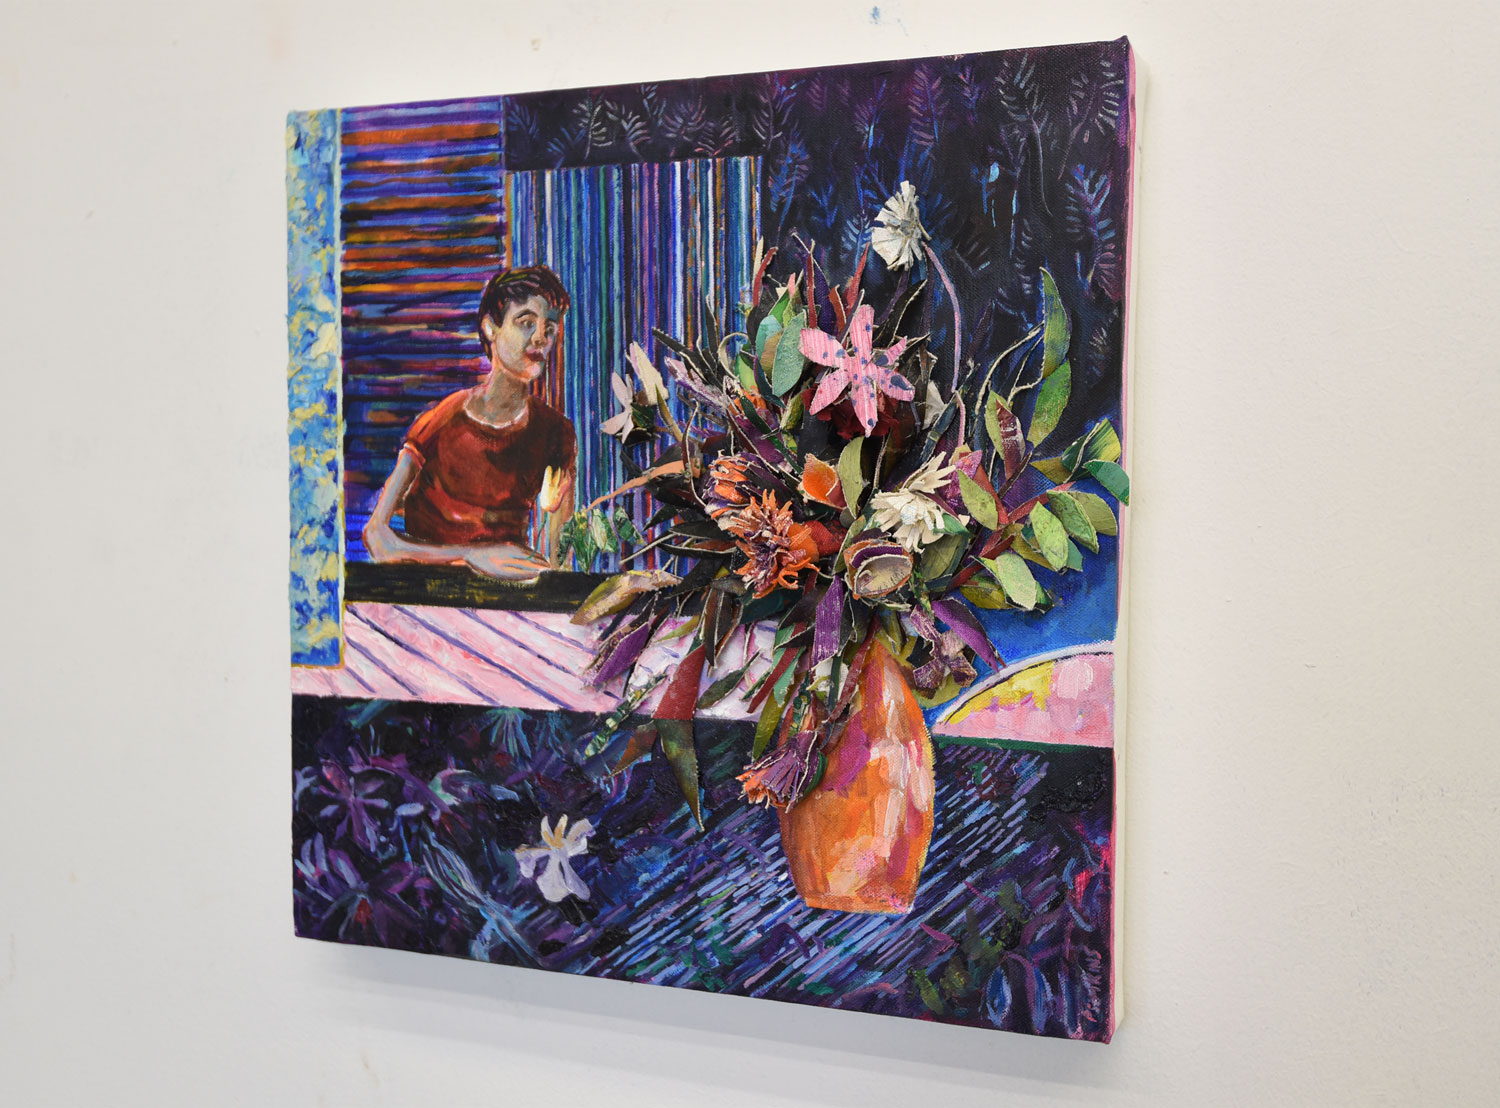 Hernan-Bas-inspired-flowers_side1_patrick-simkins_artist_collage_oil-paint_Paris_2020